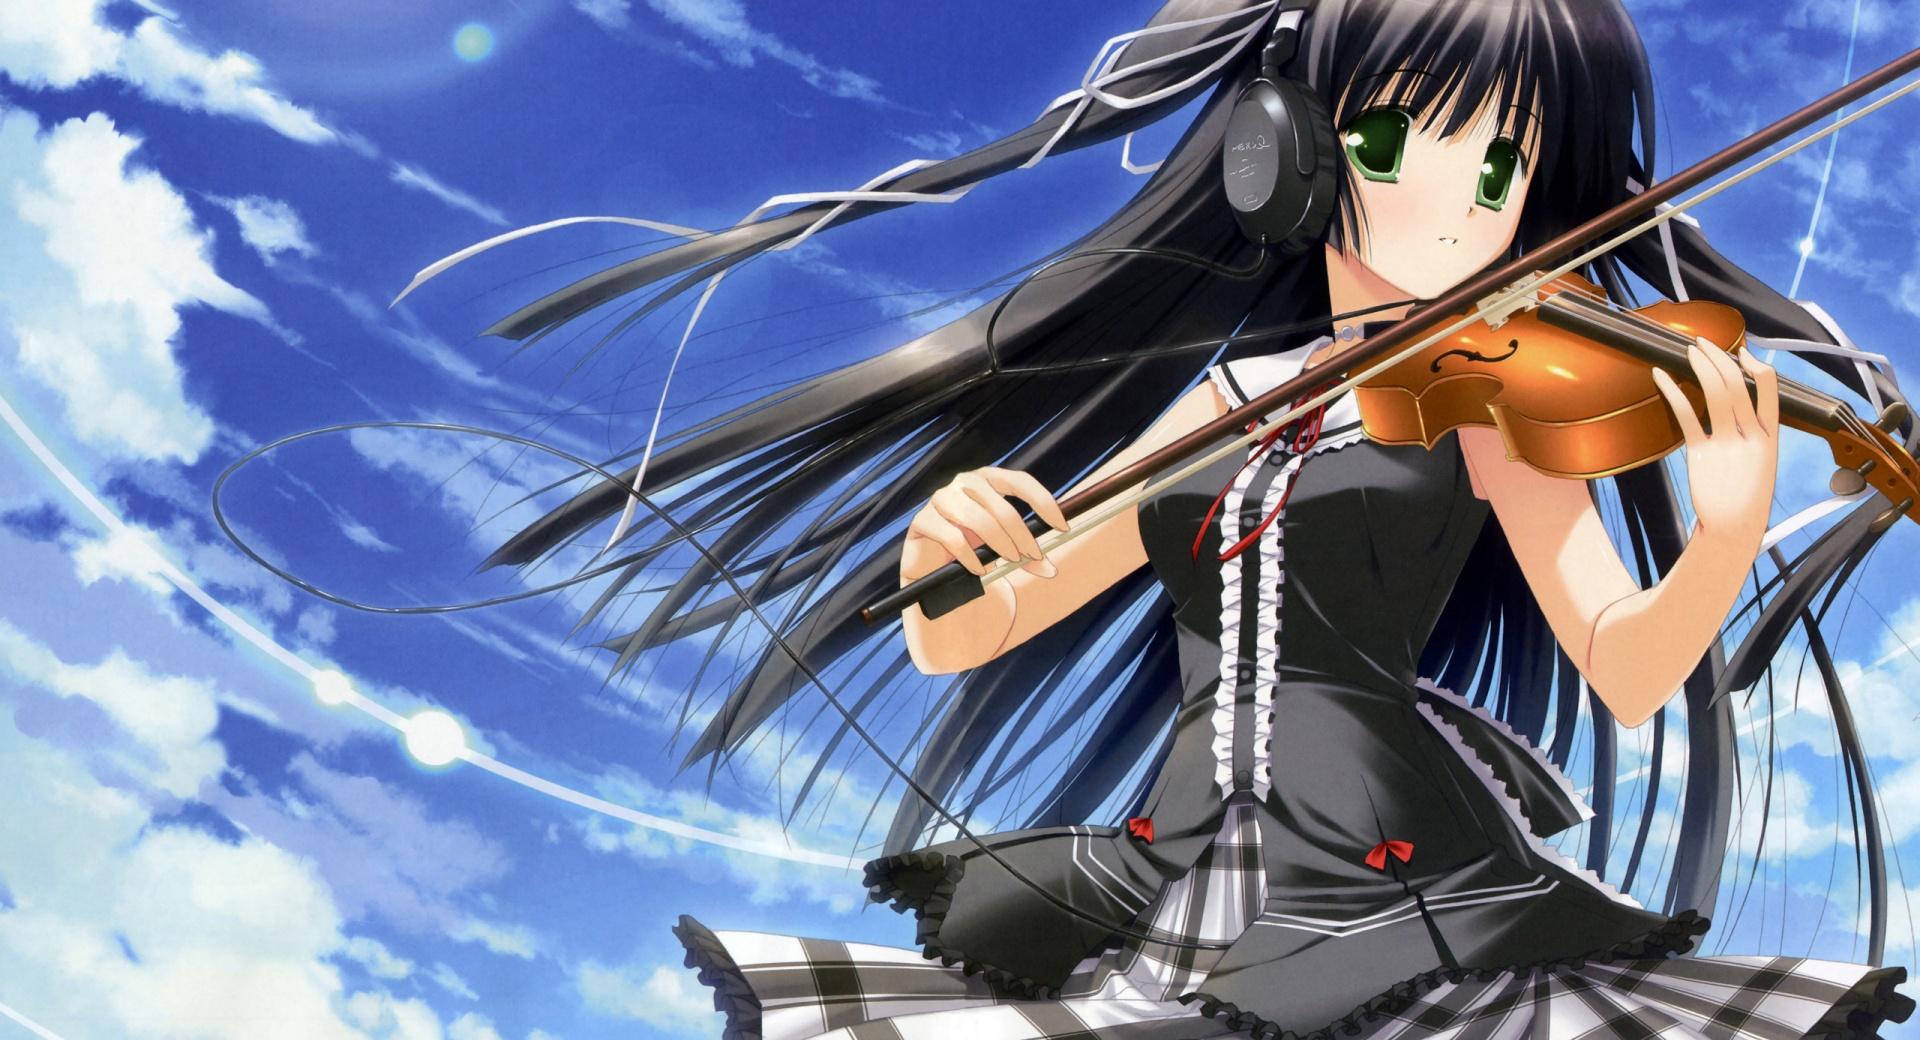 Anime Girl Playing Violin wallpapers HD quality